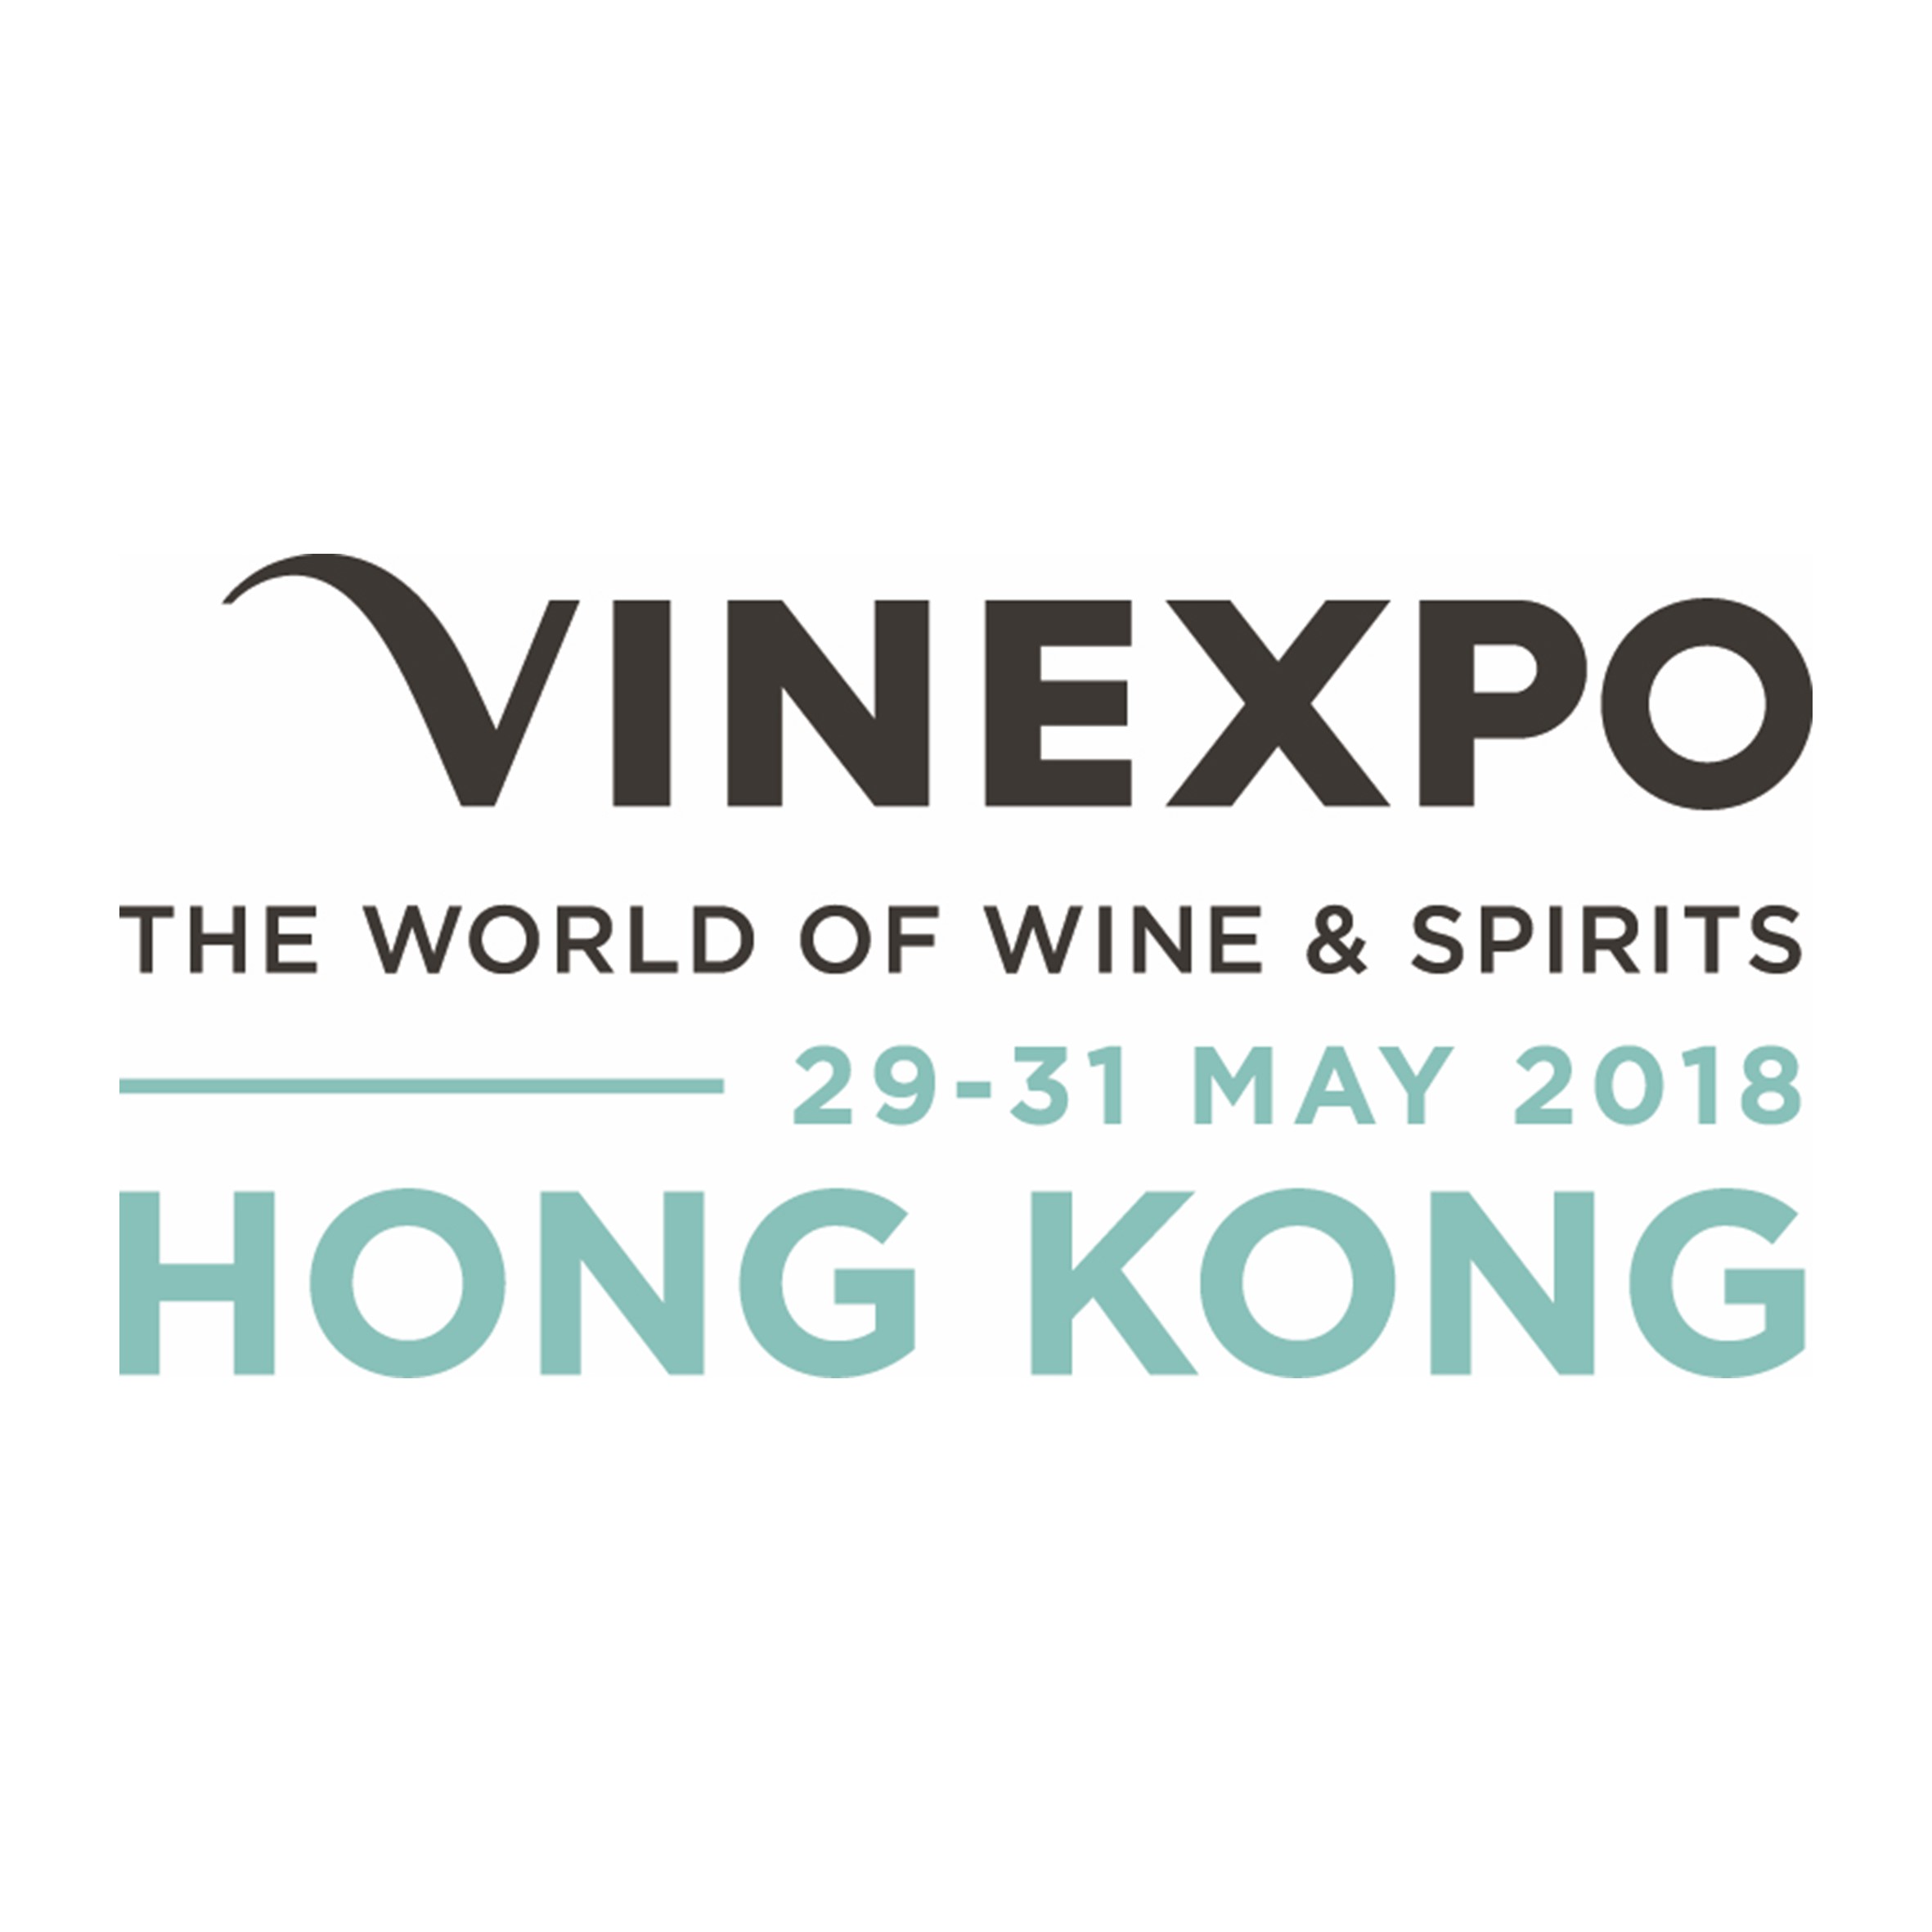 Vinexpo Hong Kong Logo 2018 - Markets at a Glance: Brazil